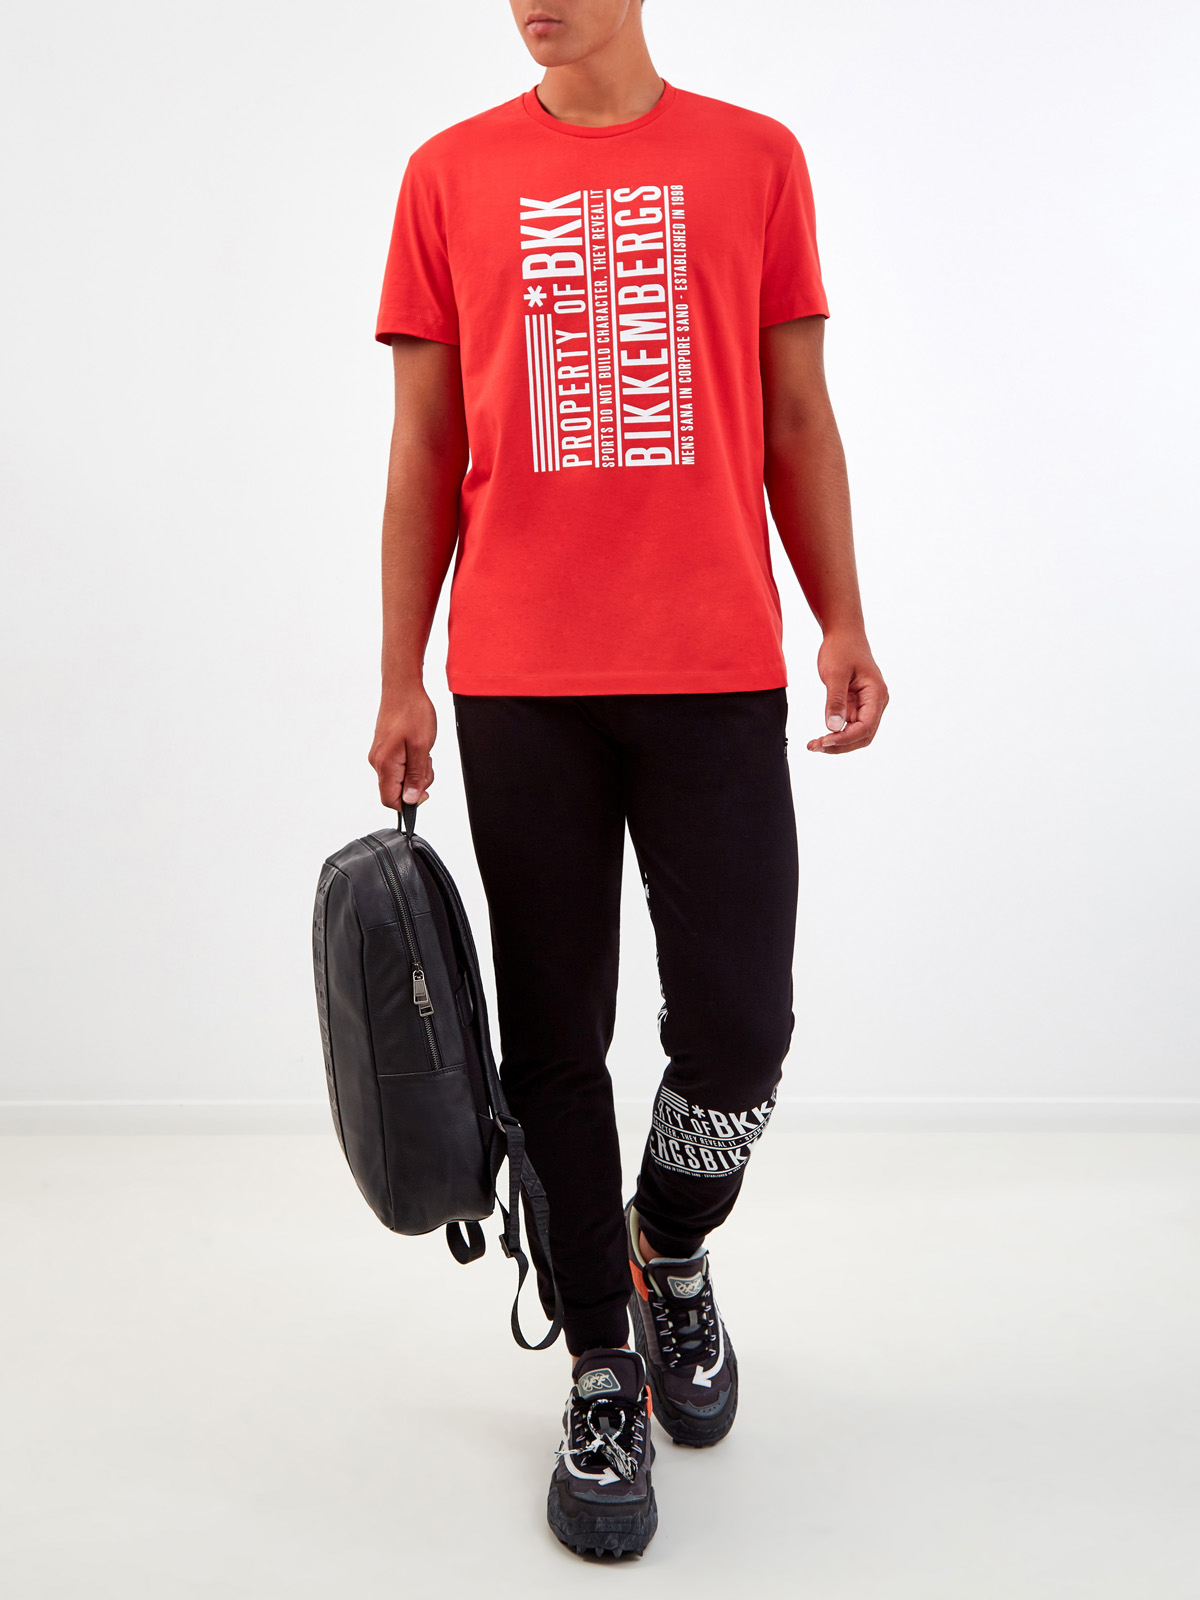 Яркая футболка из хлопка с принтом Property of BKK BIKKEMBERGS, цвет красный, размер XL;2XL;3XL;L - фото 2